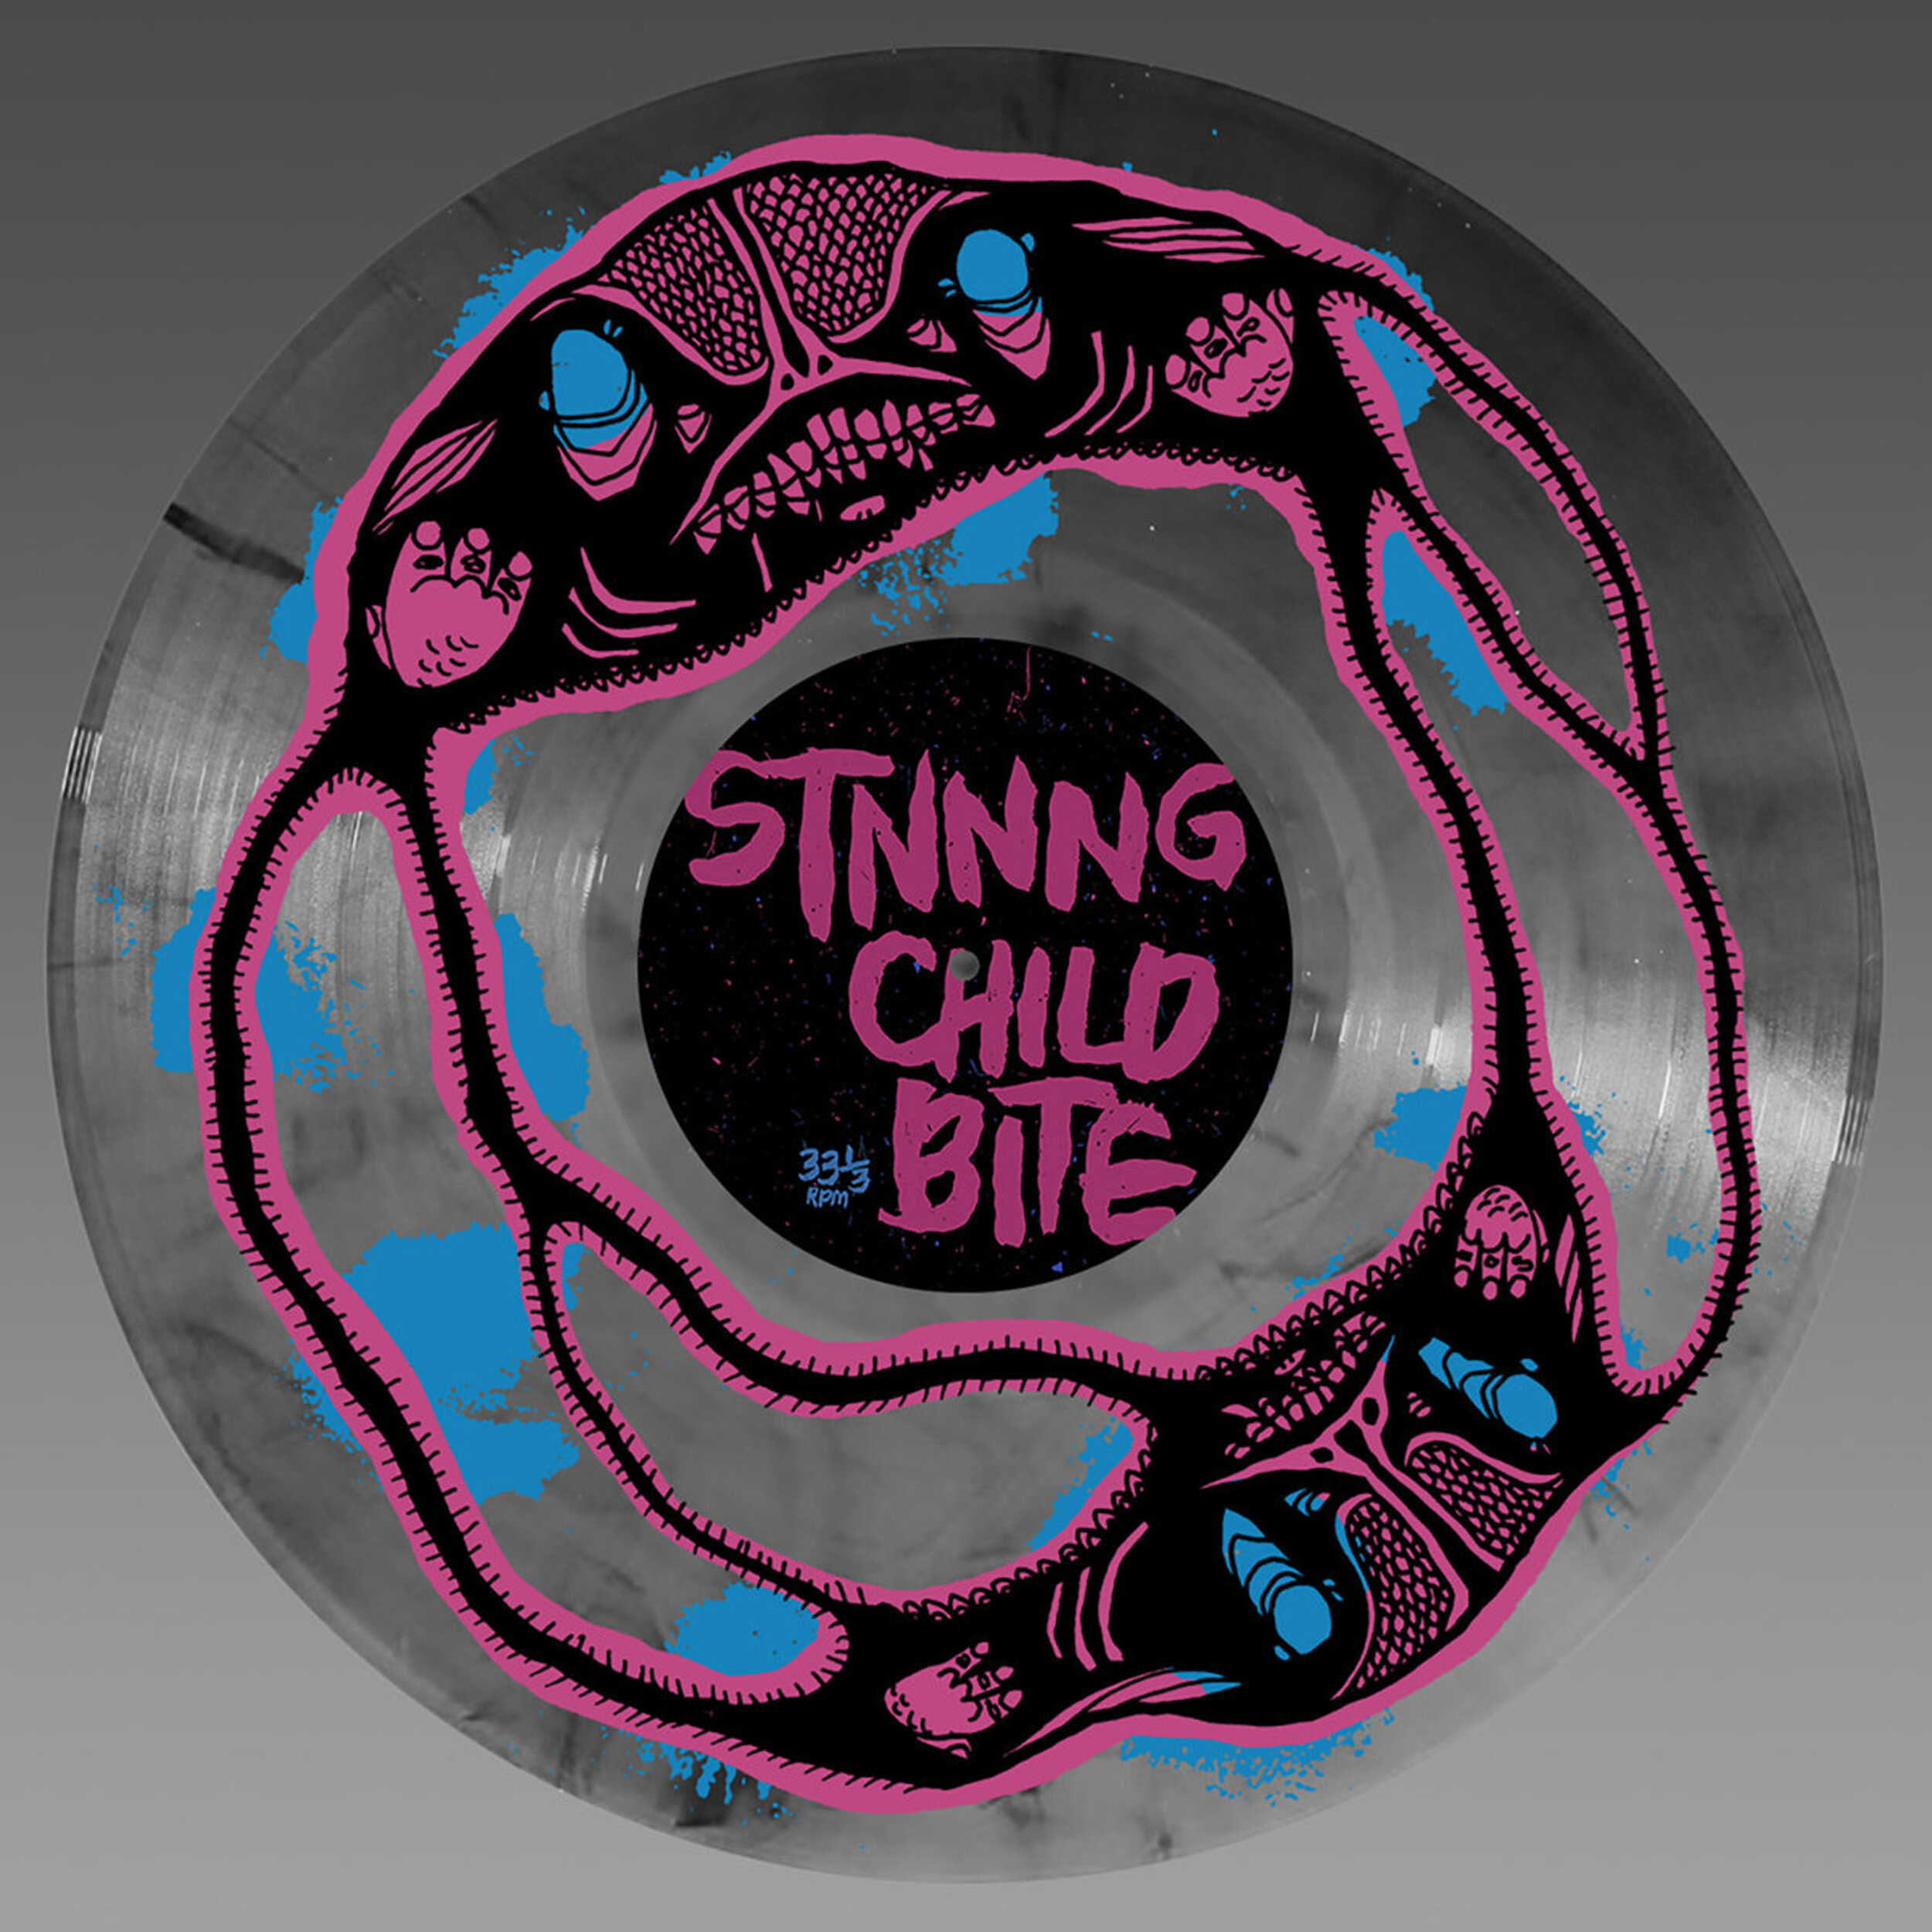 FAR-049 STNNNG / Child Bite split LP